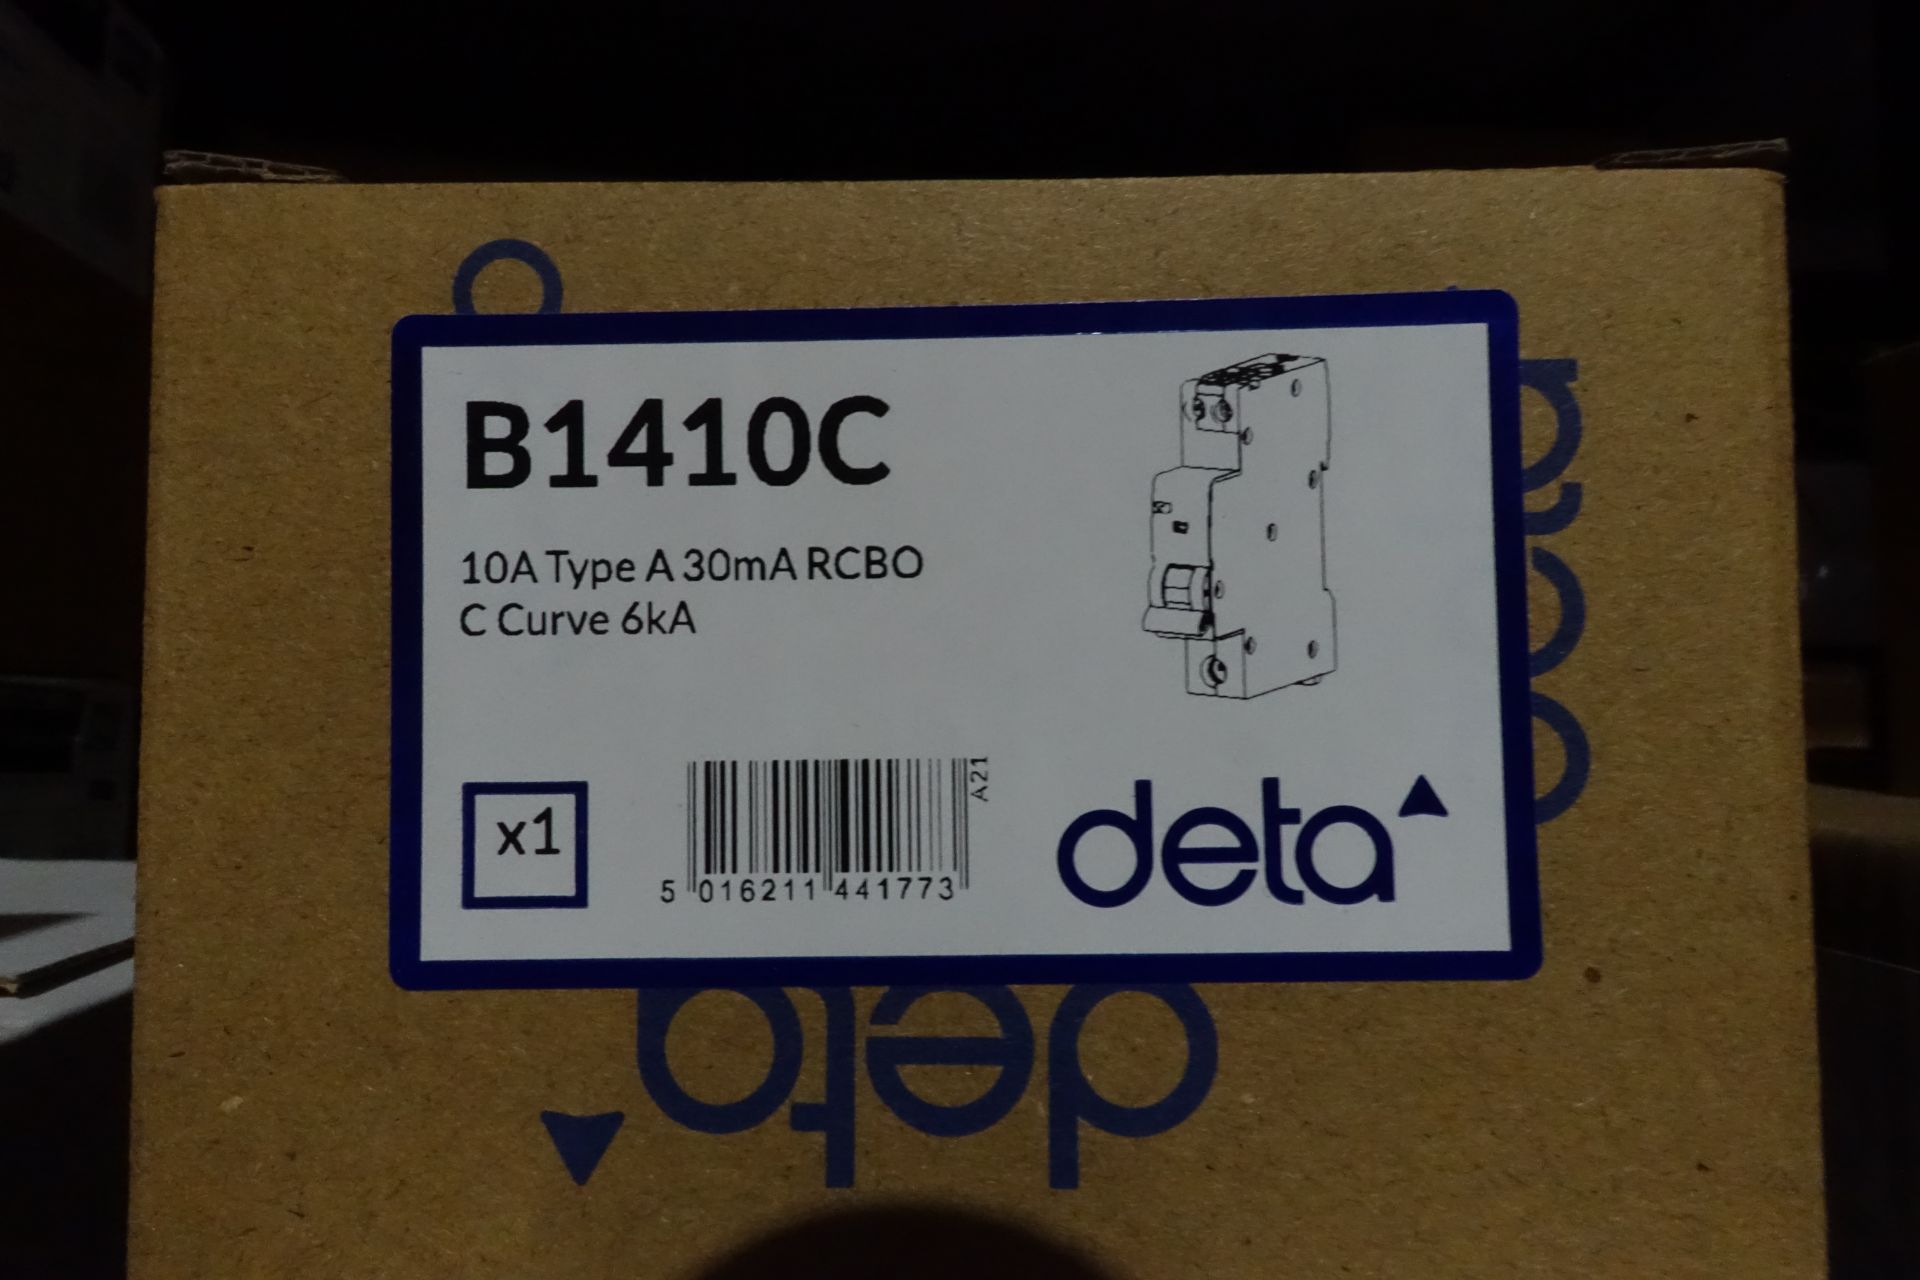 20 x DETA B1410C 10A Type A RCBO's C - Curve 6kA